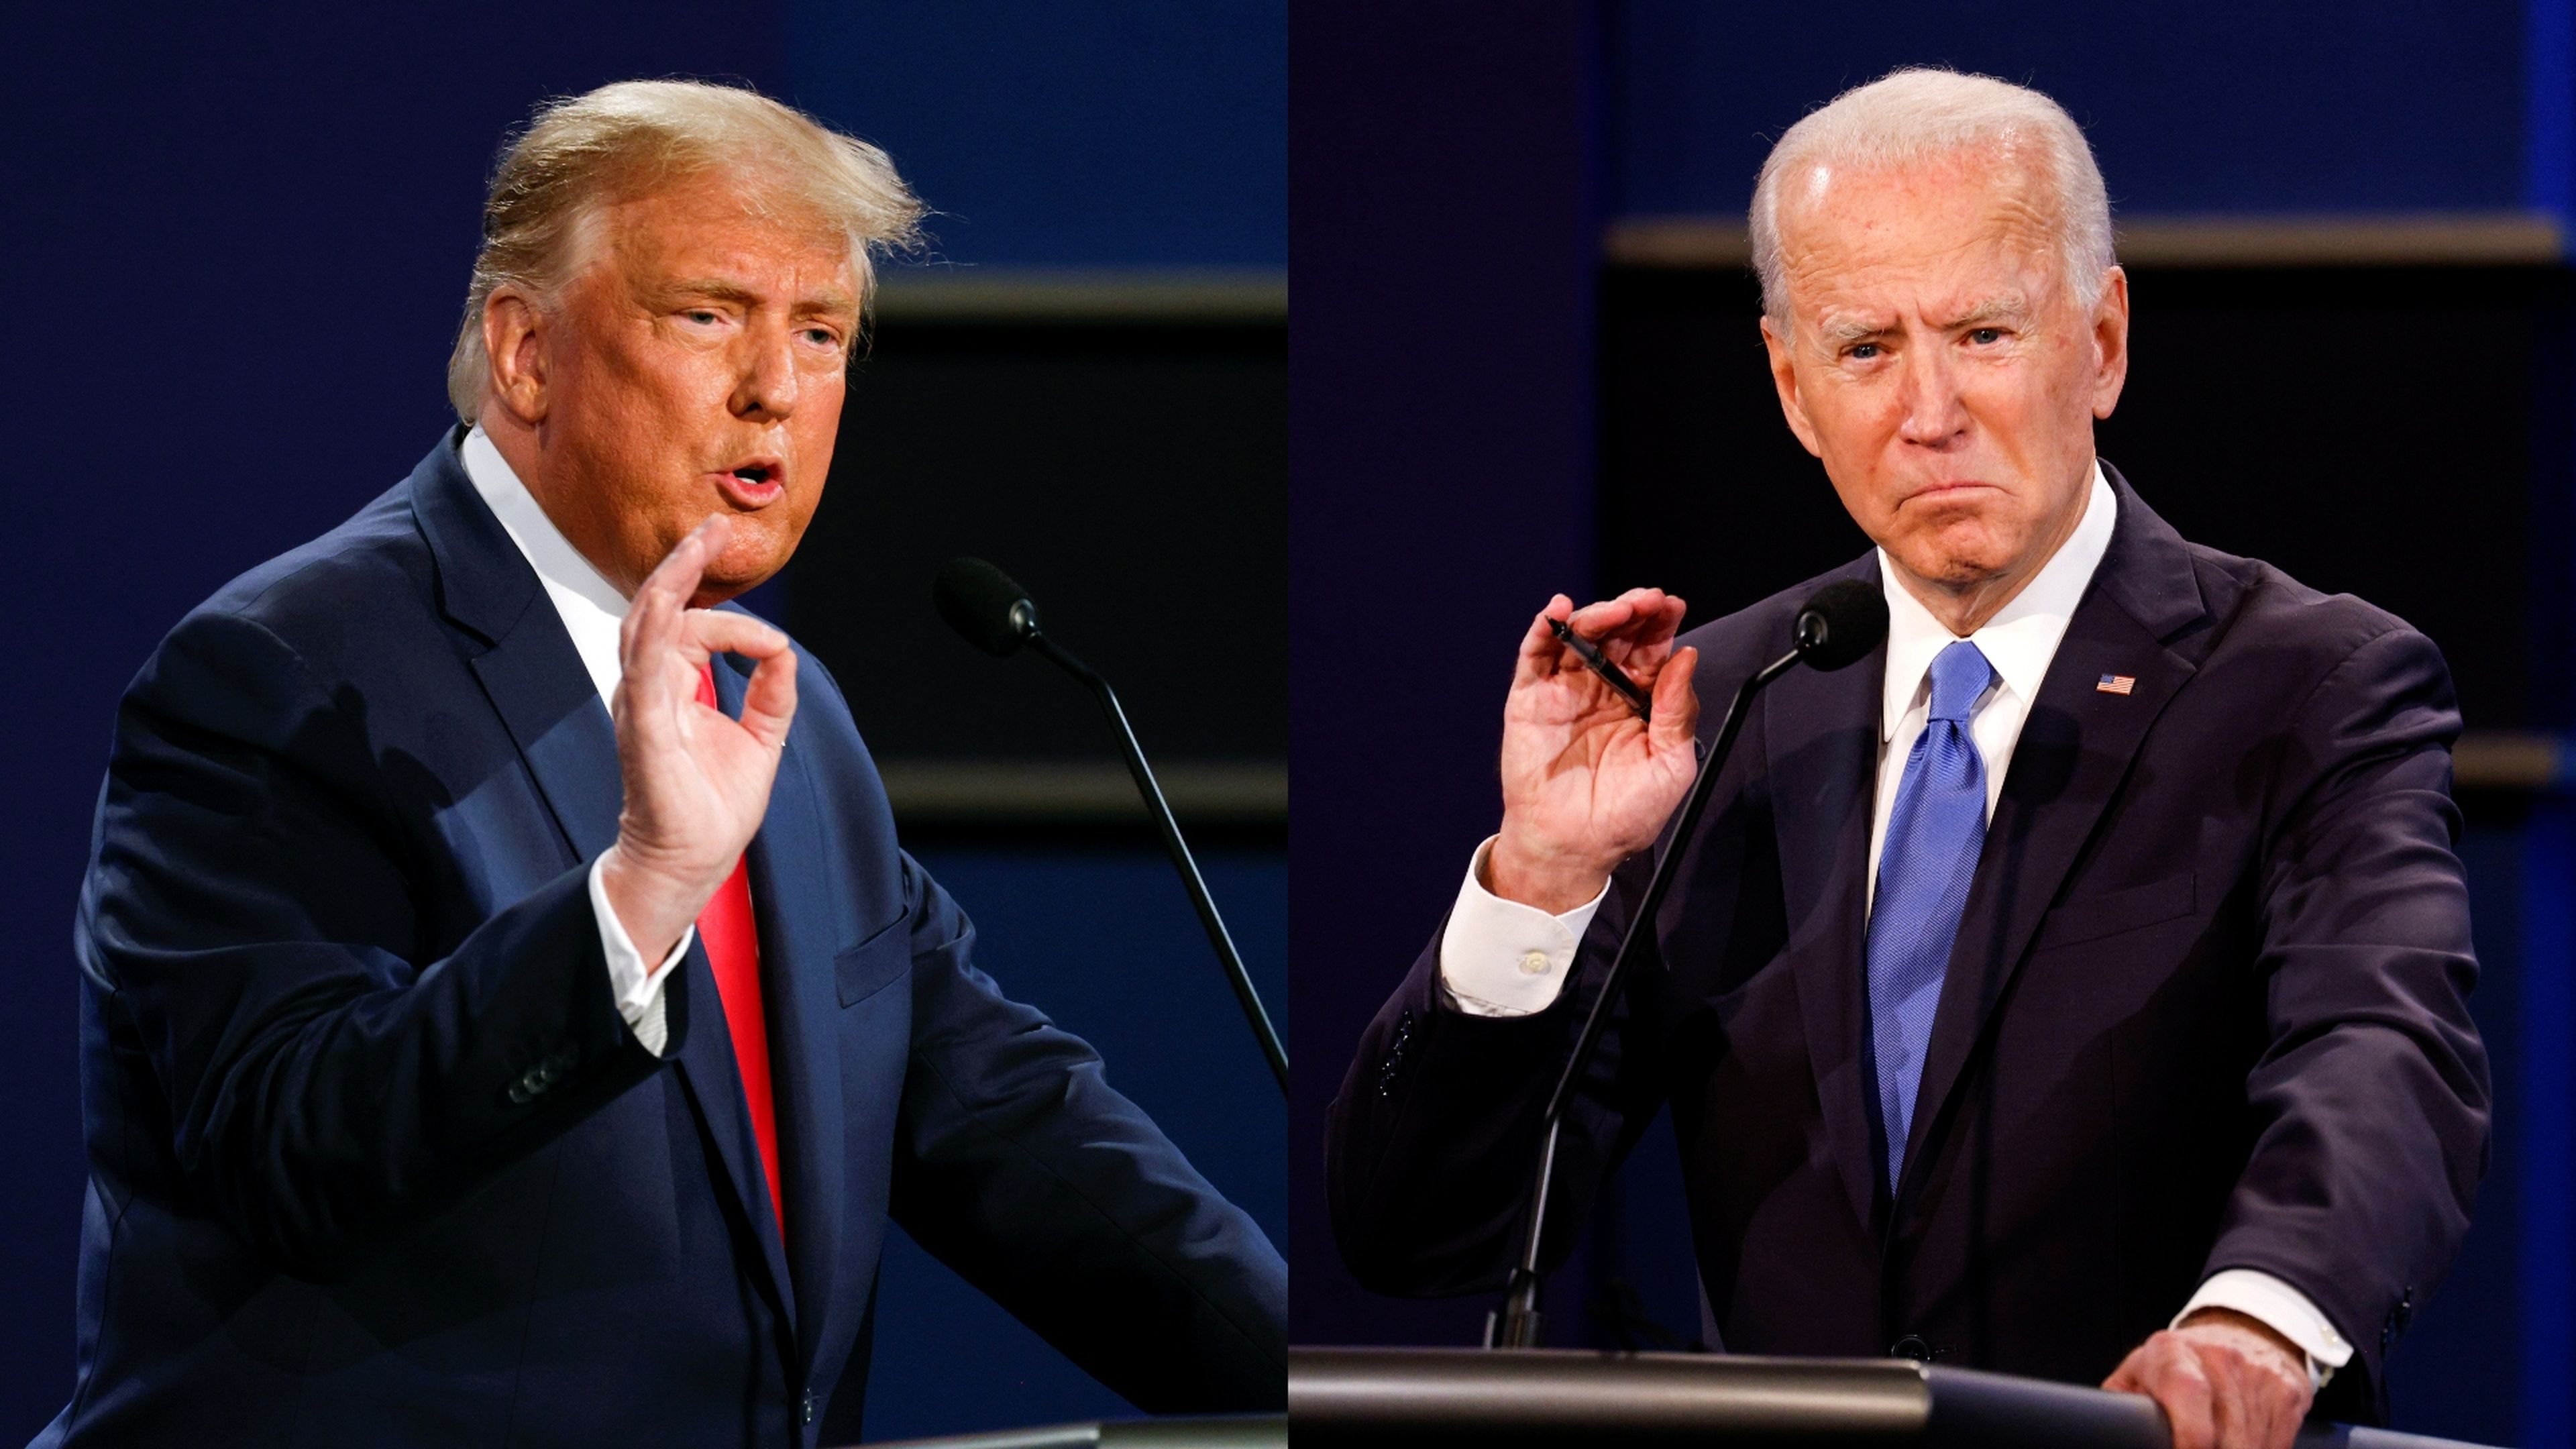 El actual presidente de EEUU, Donald Trump, y el candidato demócrata a la presidencia Joe Biden